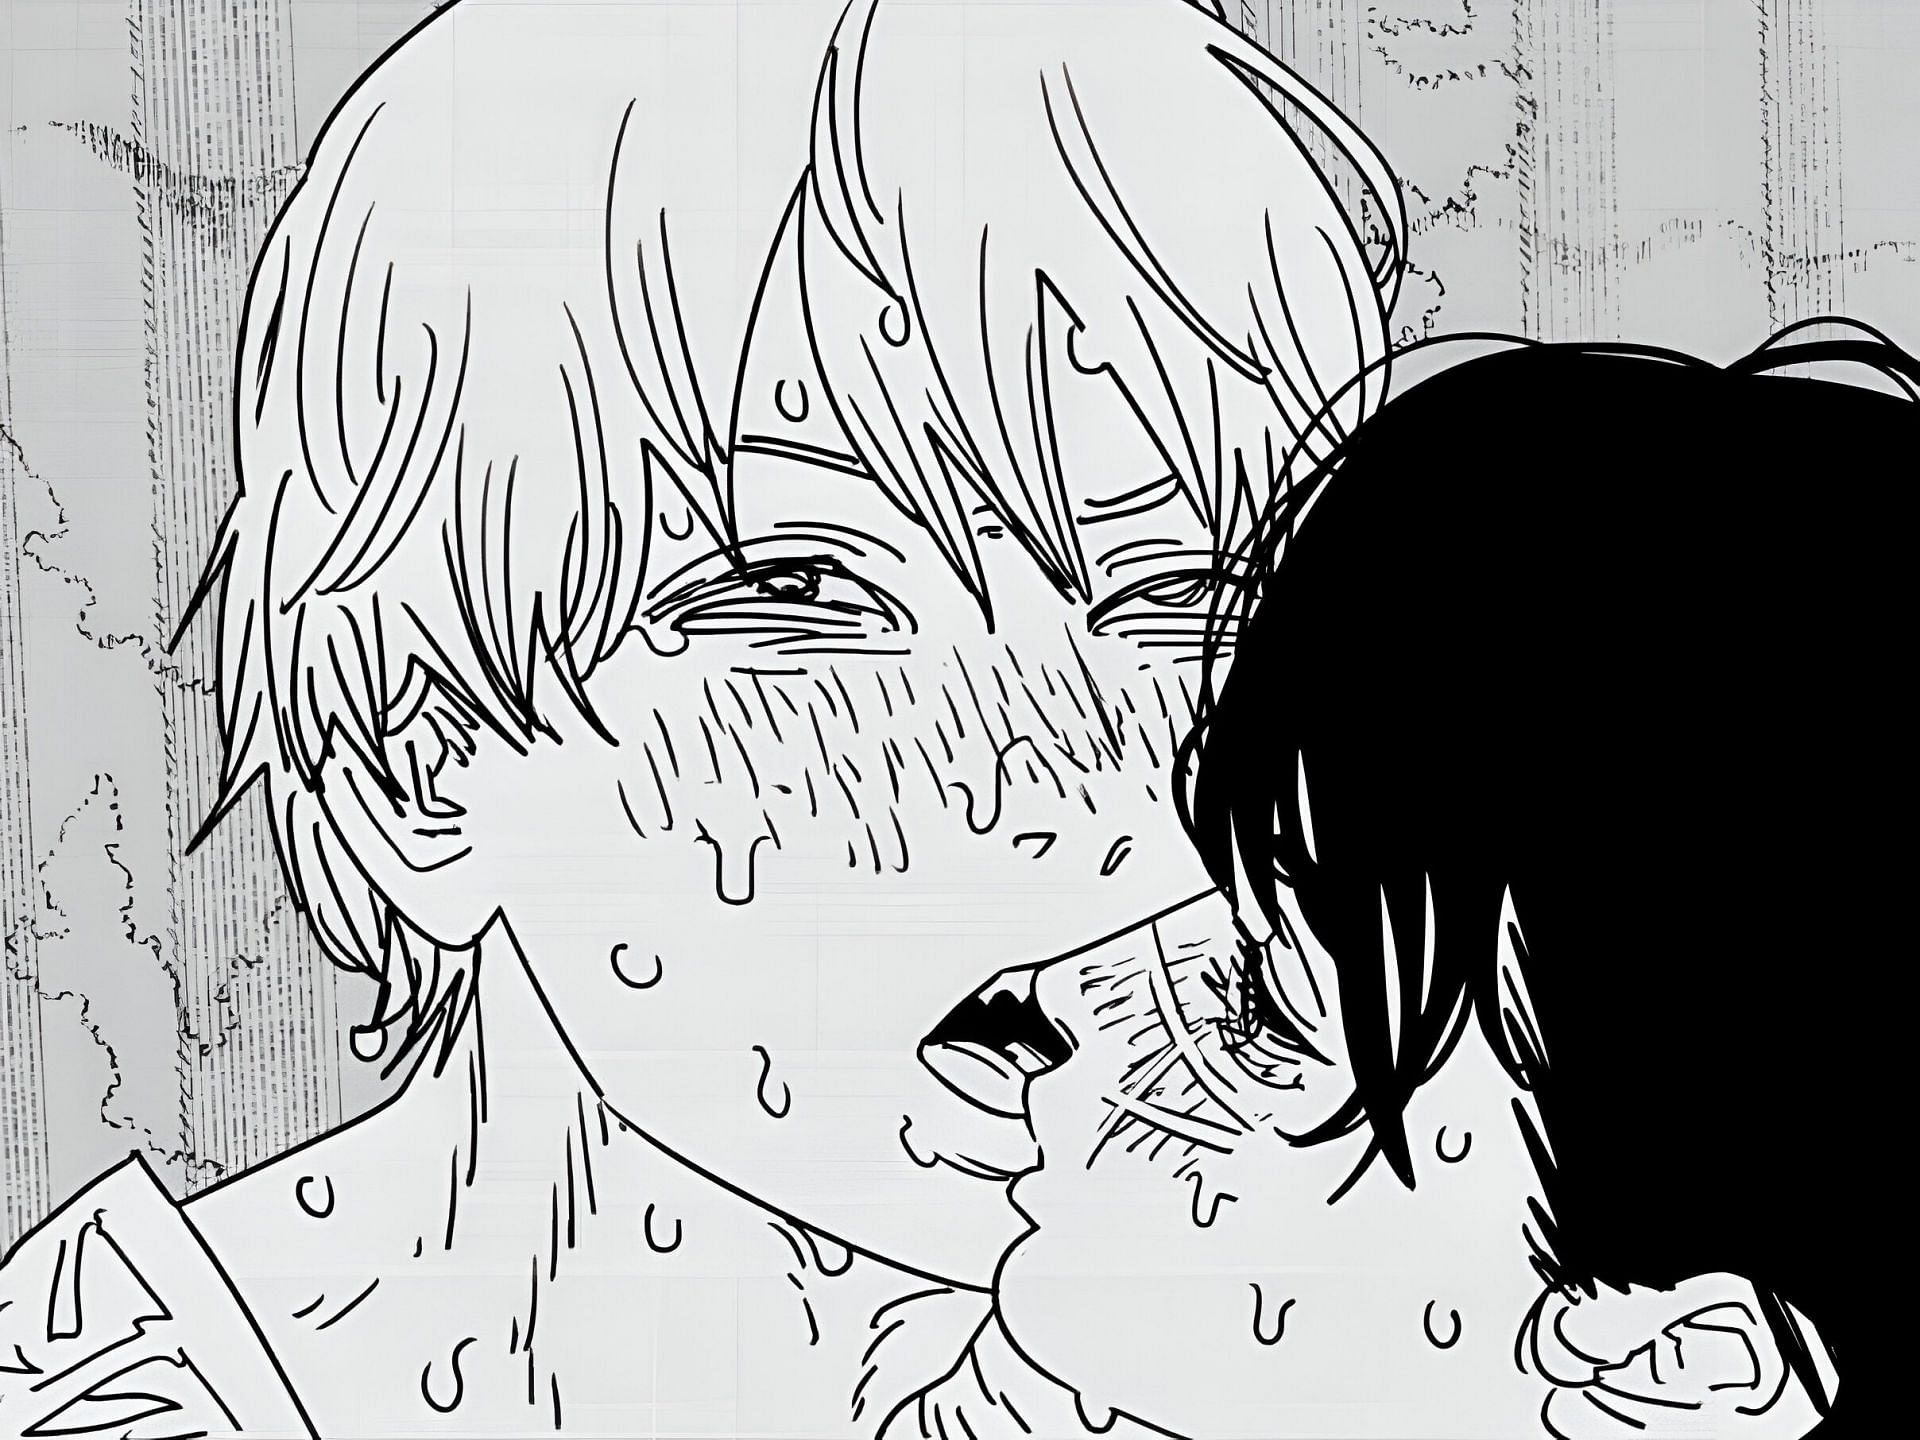 Denji and Yoru as seen in the manga (Image via Shueisha)